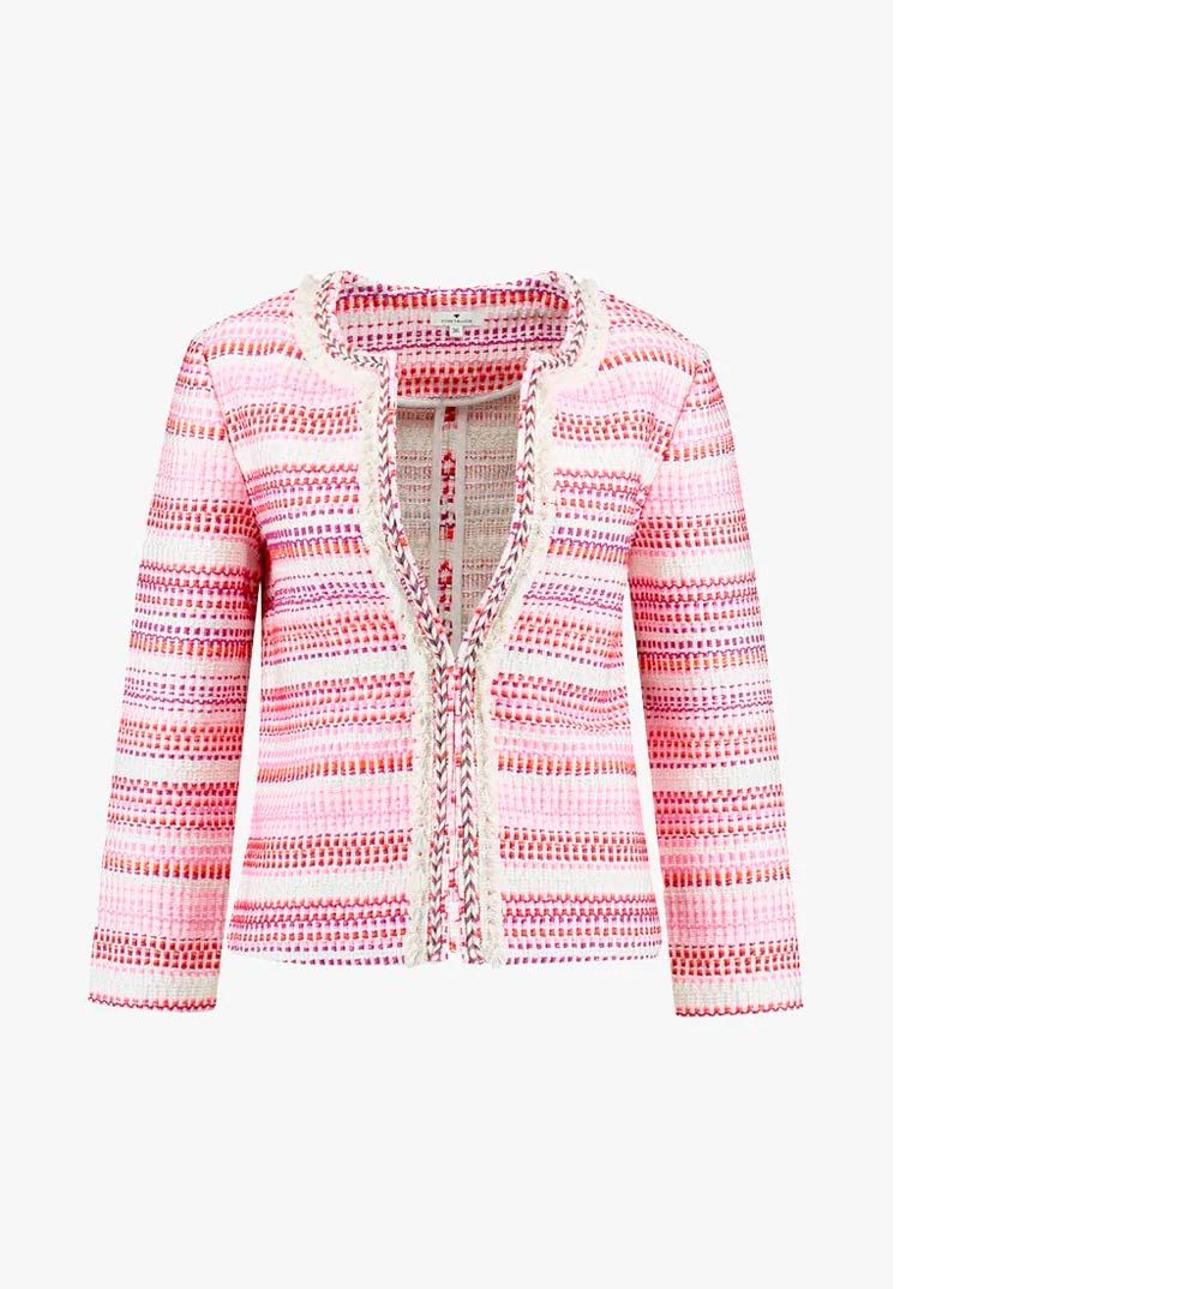 Chaqueta de tweed en tonos rosa de Zalando. (Precio: 55,99 euros)